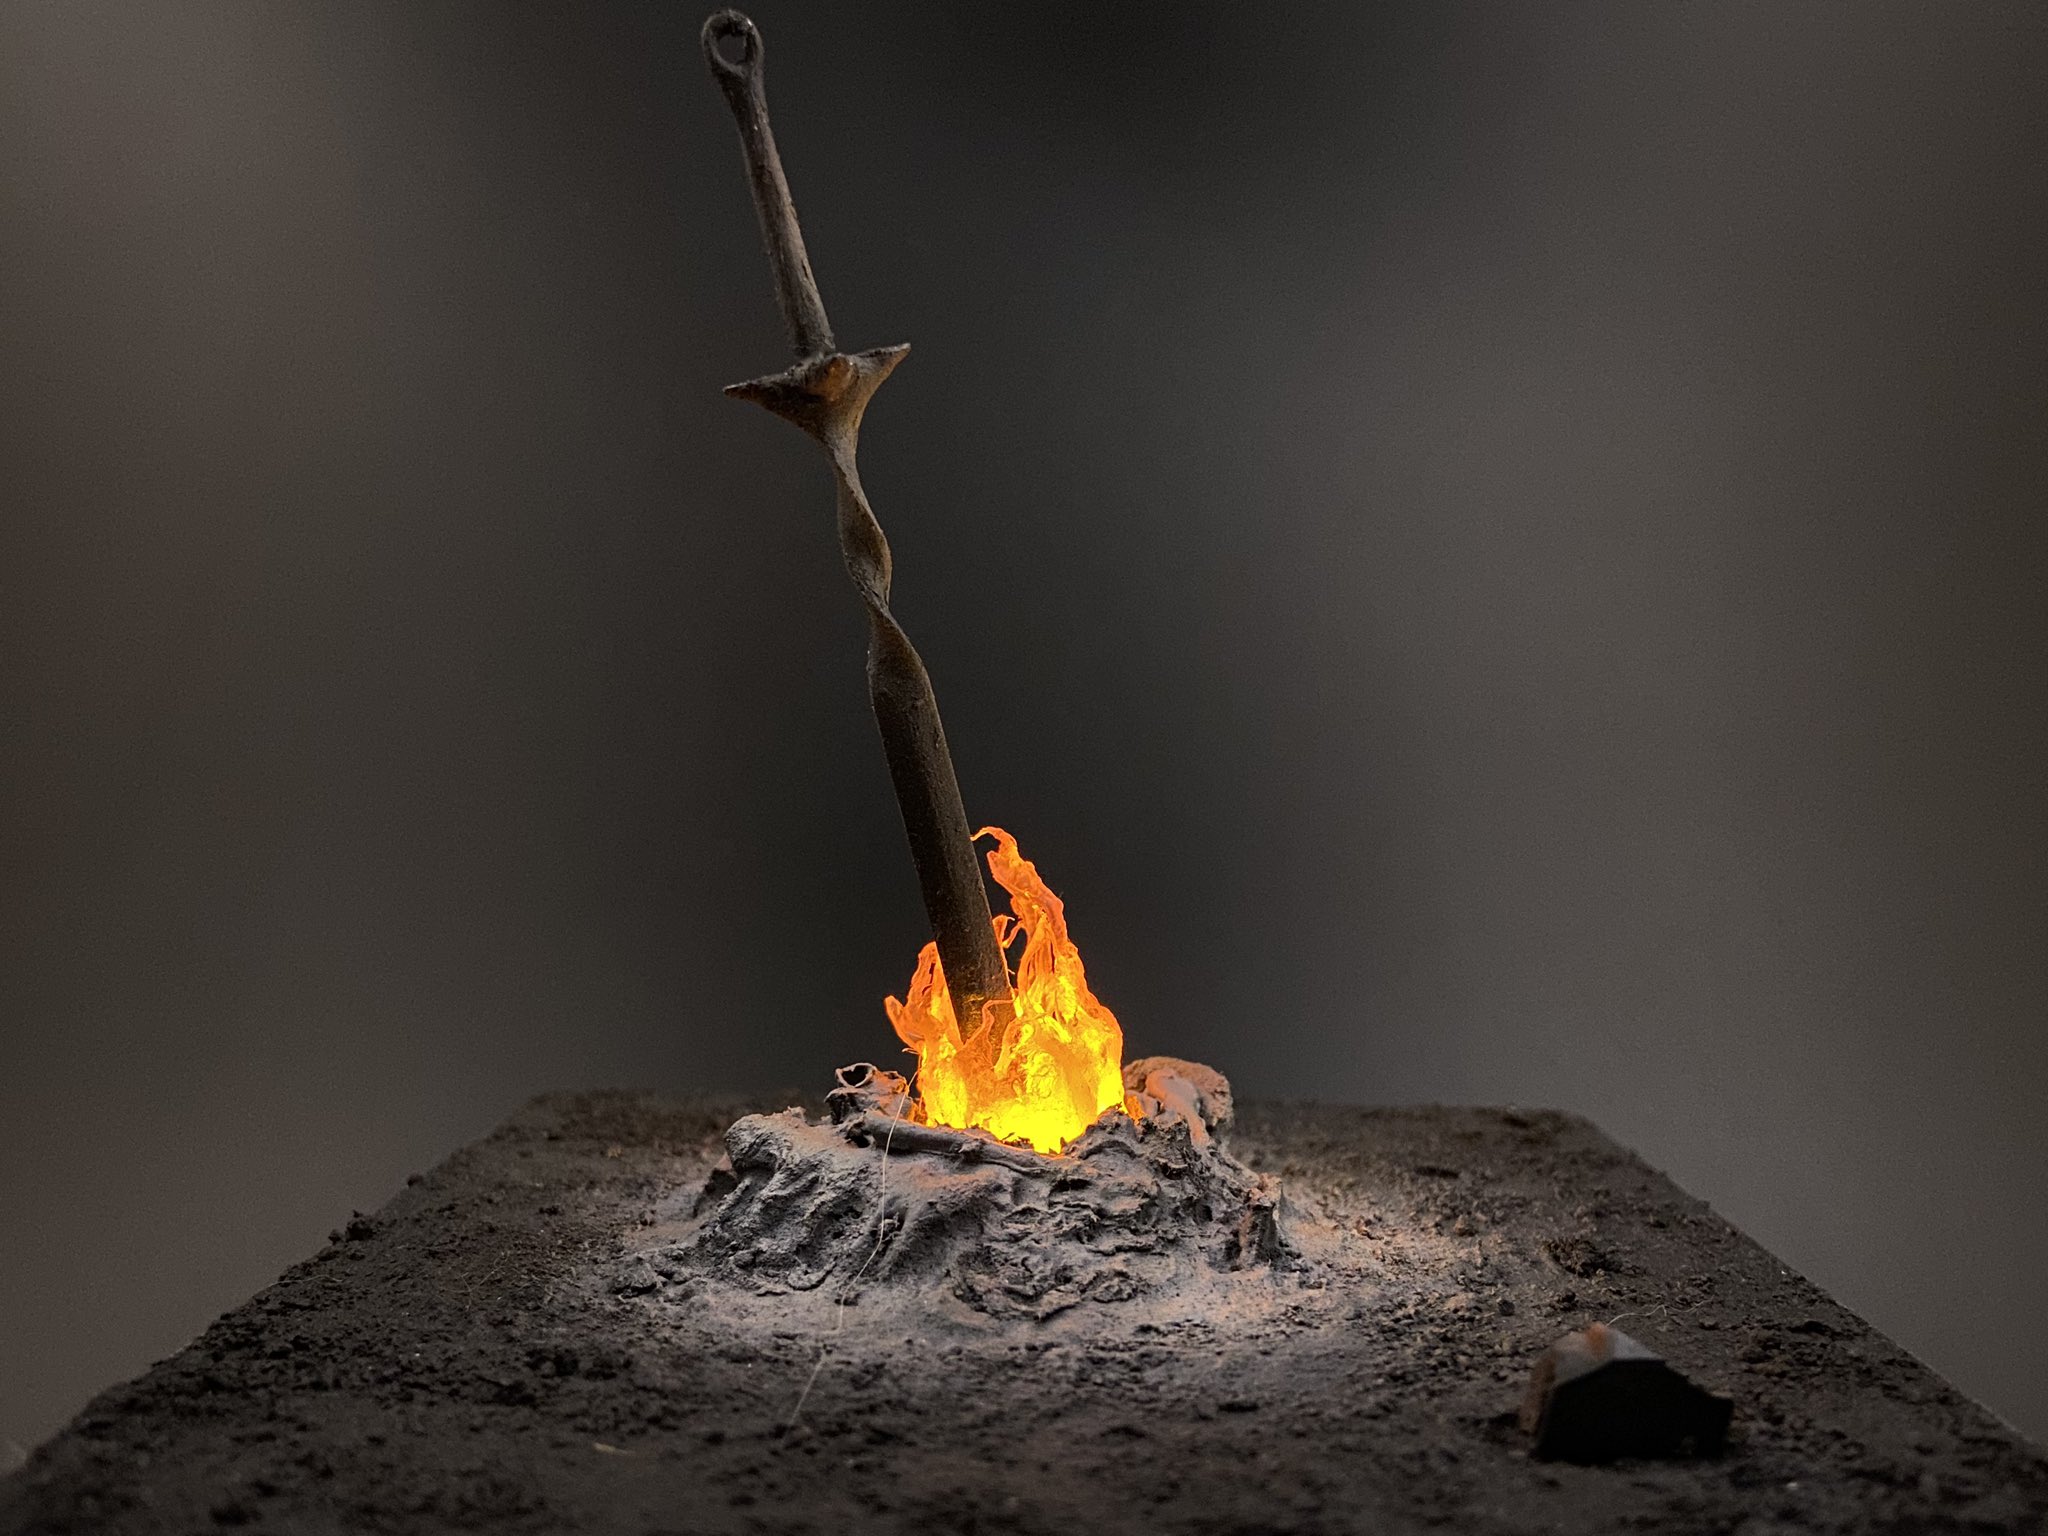 ピコ 珍しくちゃんと写真撮ったのでアップさせて頂きます ダークソウルから 篝火 完成です ロウソクledを4個仕込んだので炎がゆらゆら揺らぎます ダクソ 篝火